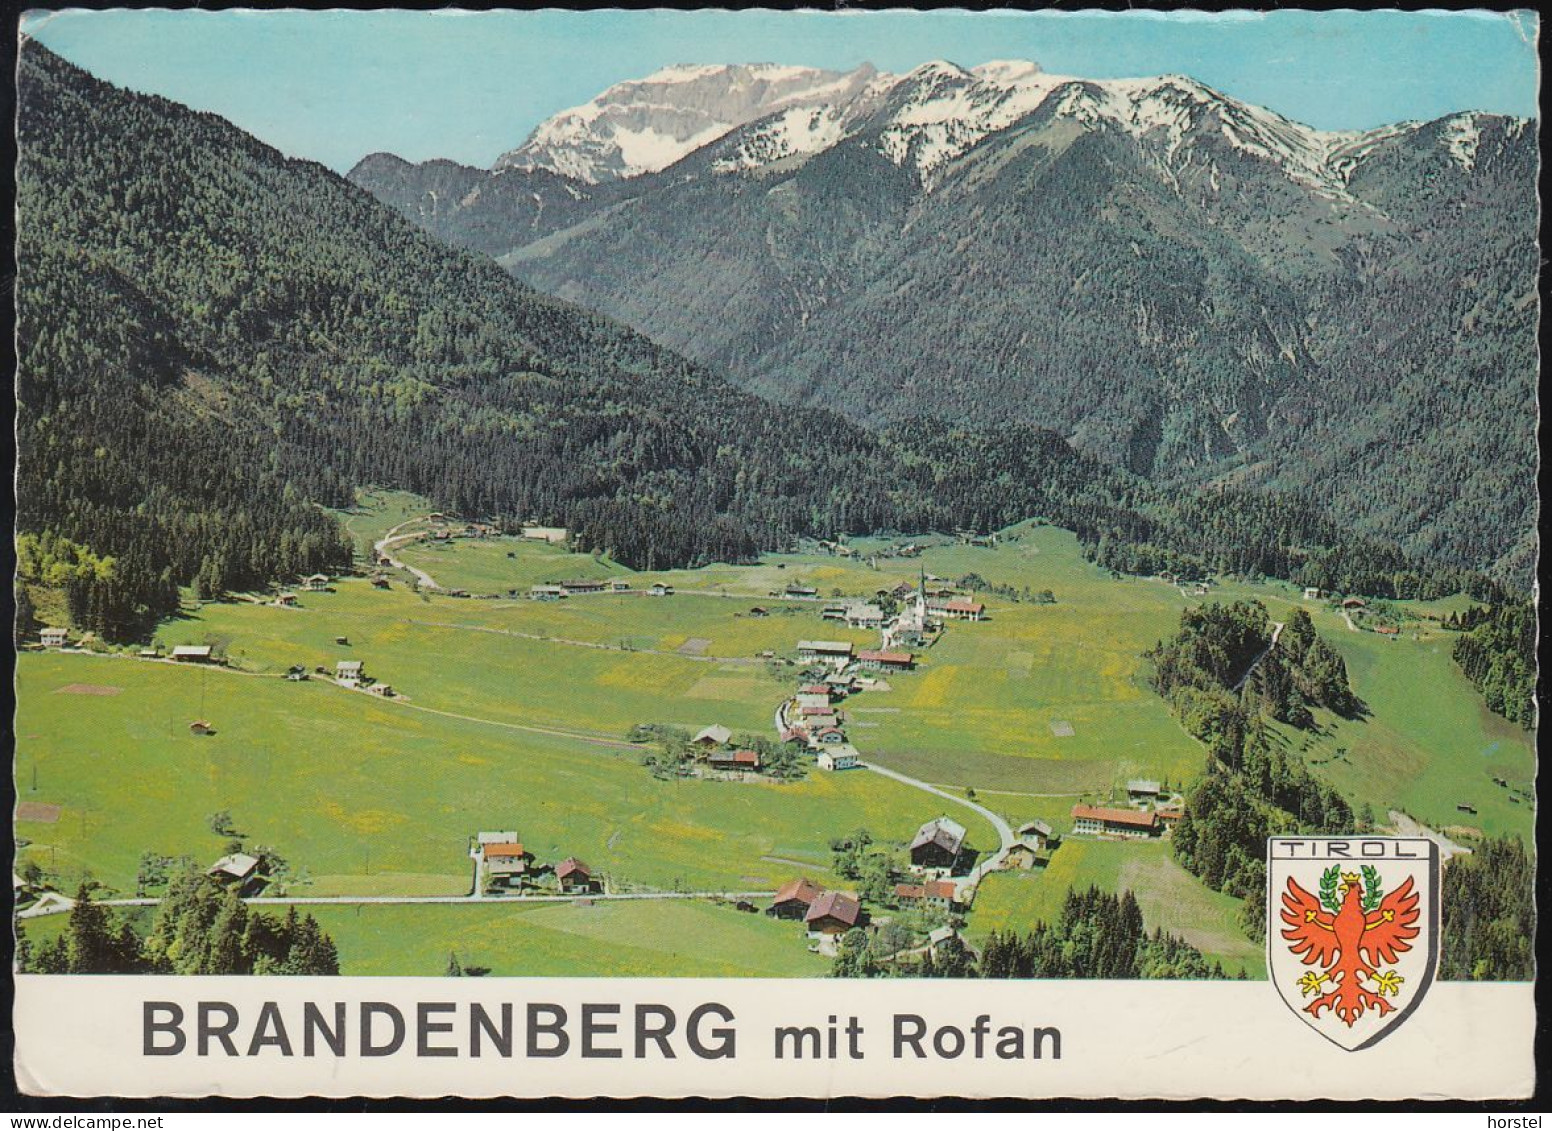 Austria - 6234 Brandenberg - Alte Ortsansicht - Wappen - Nice Stamp 1973 - Brixlegg